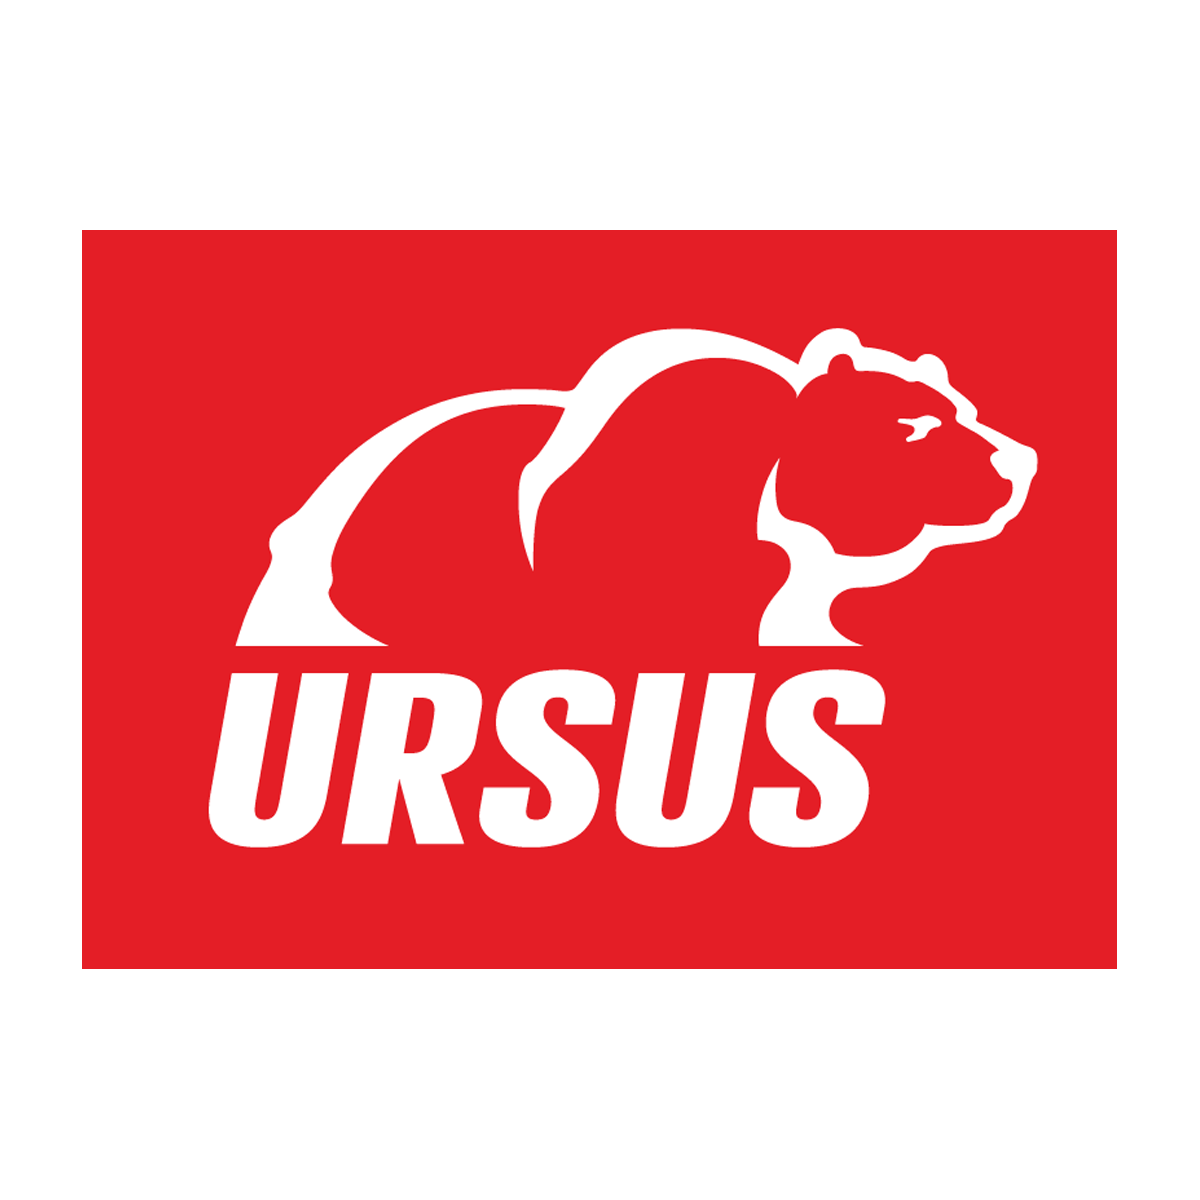 806-ursus-1200x1200.png